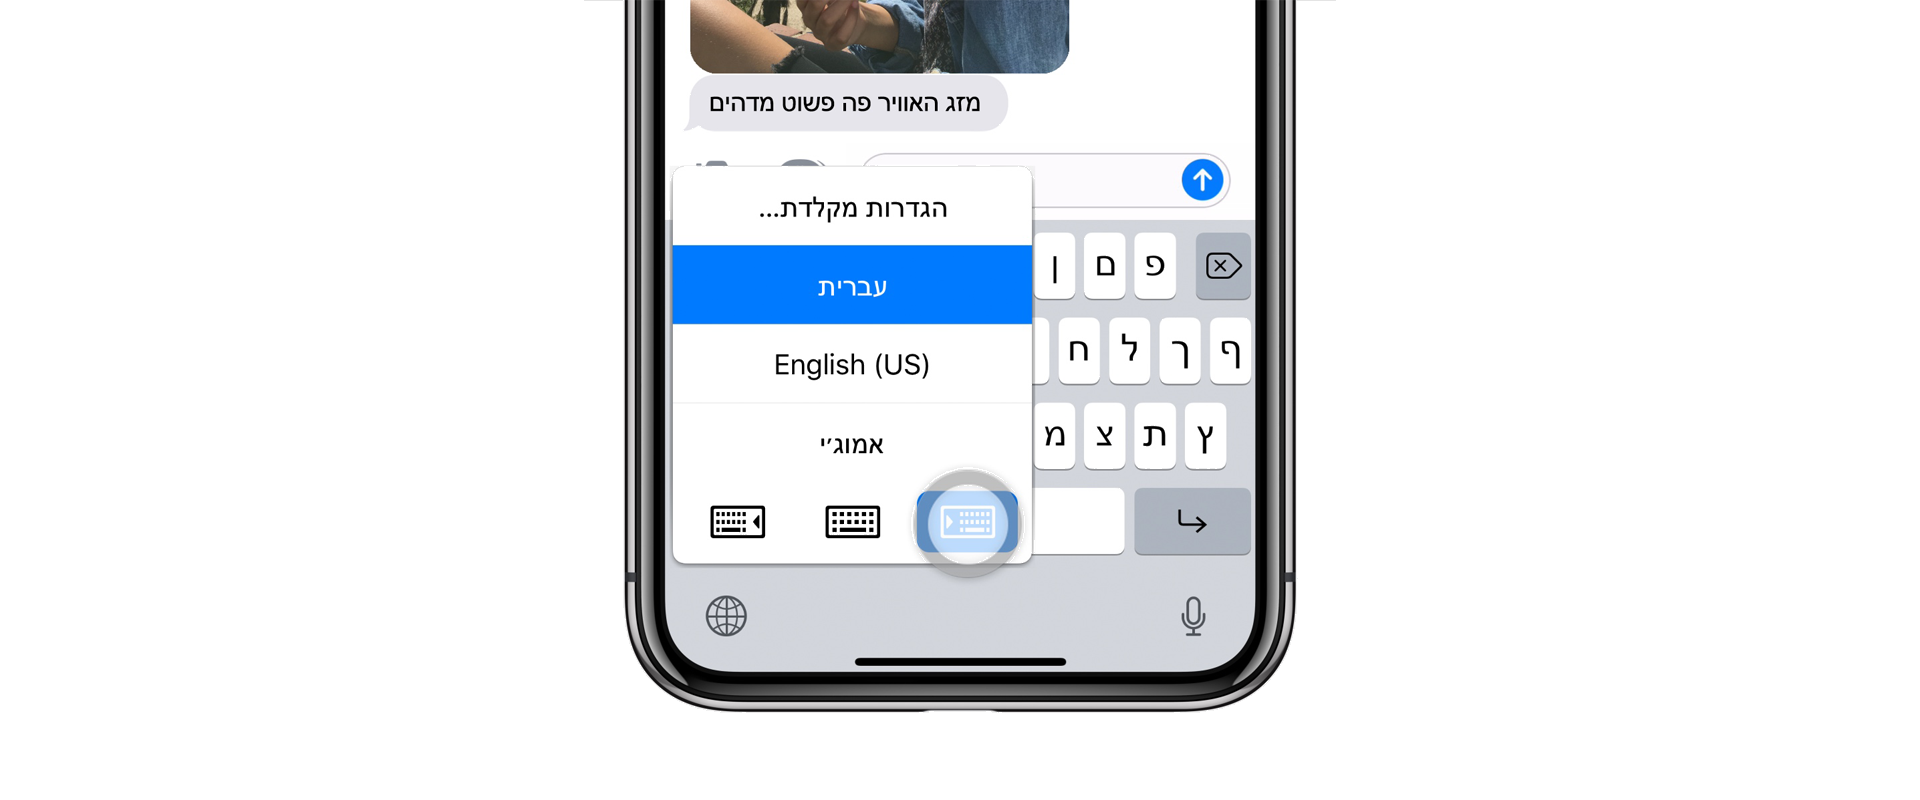 תצוגת שפה במקלדת של אייפון